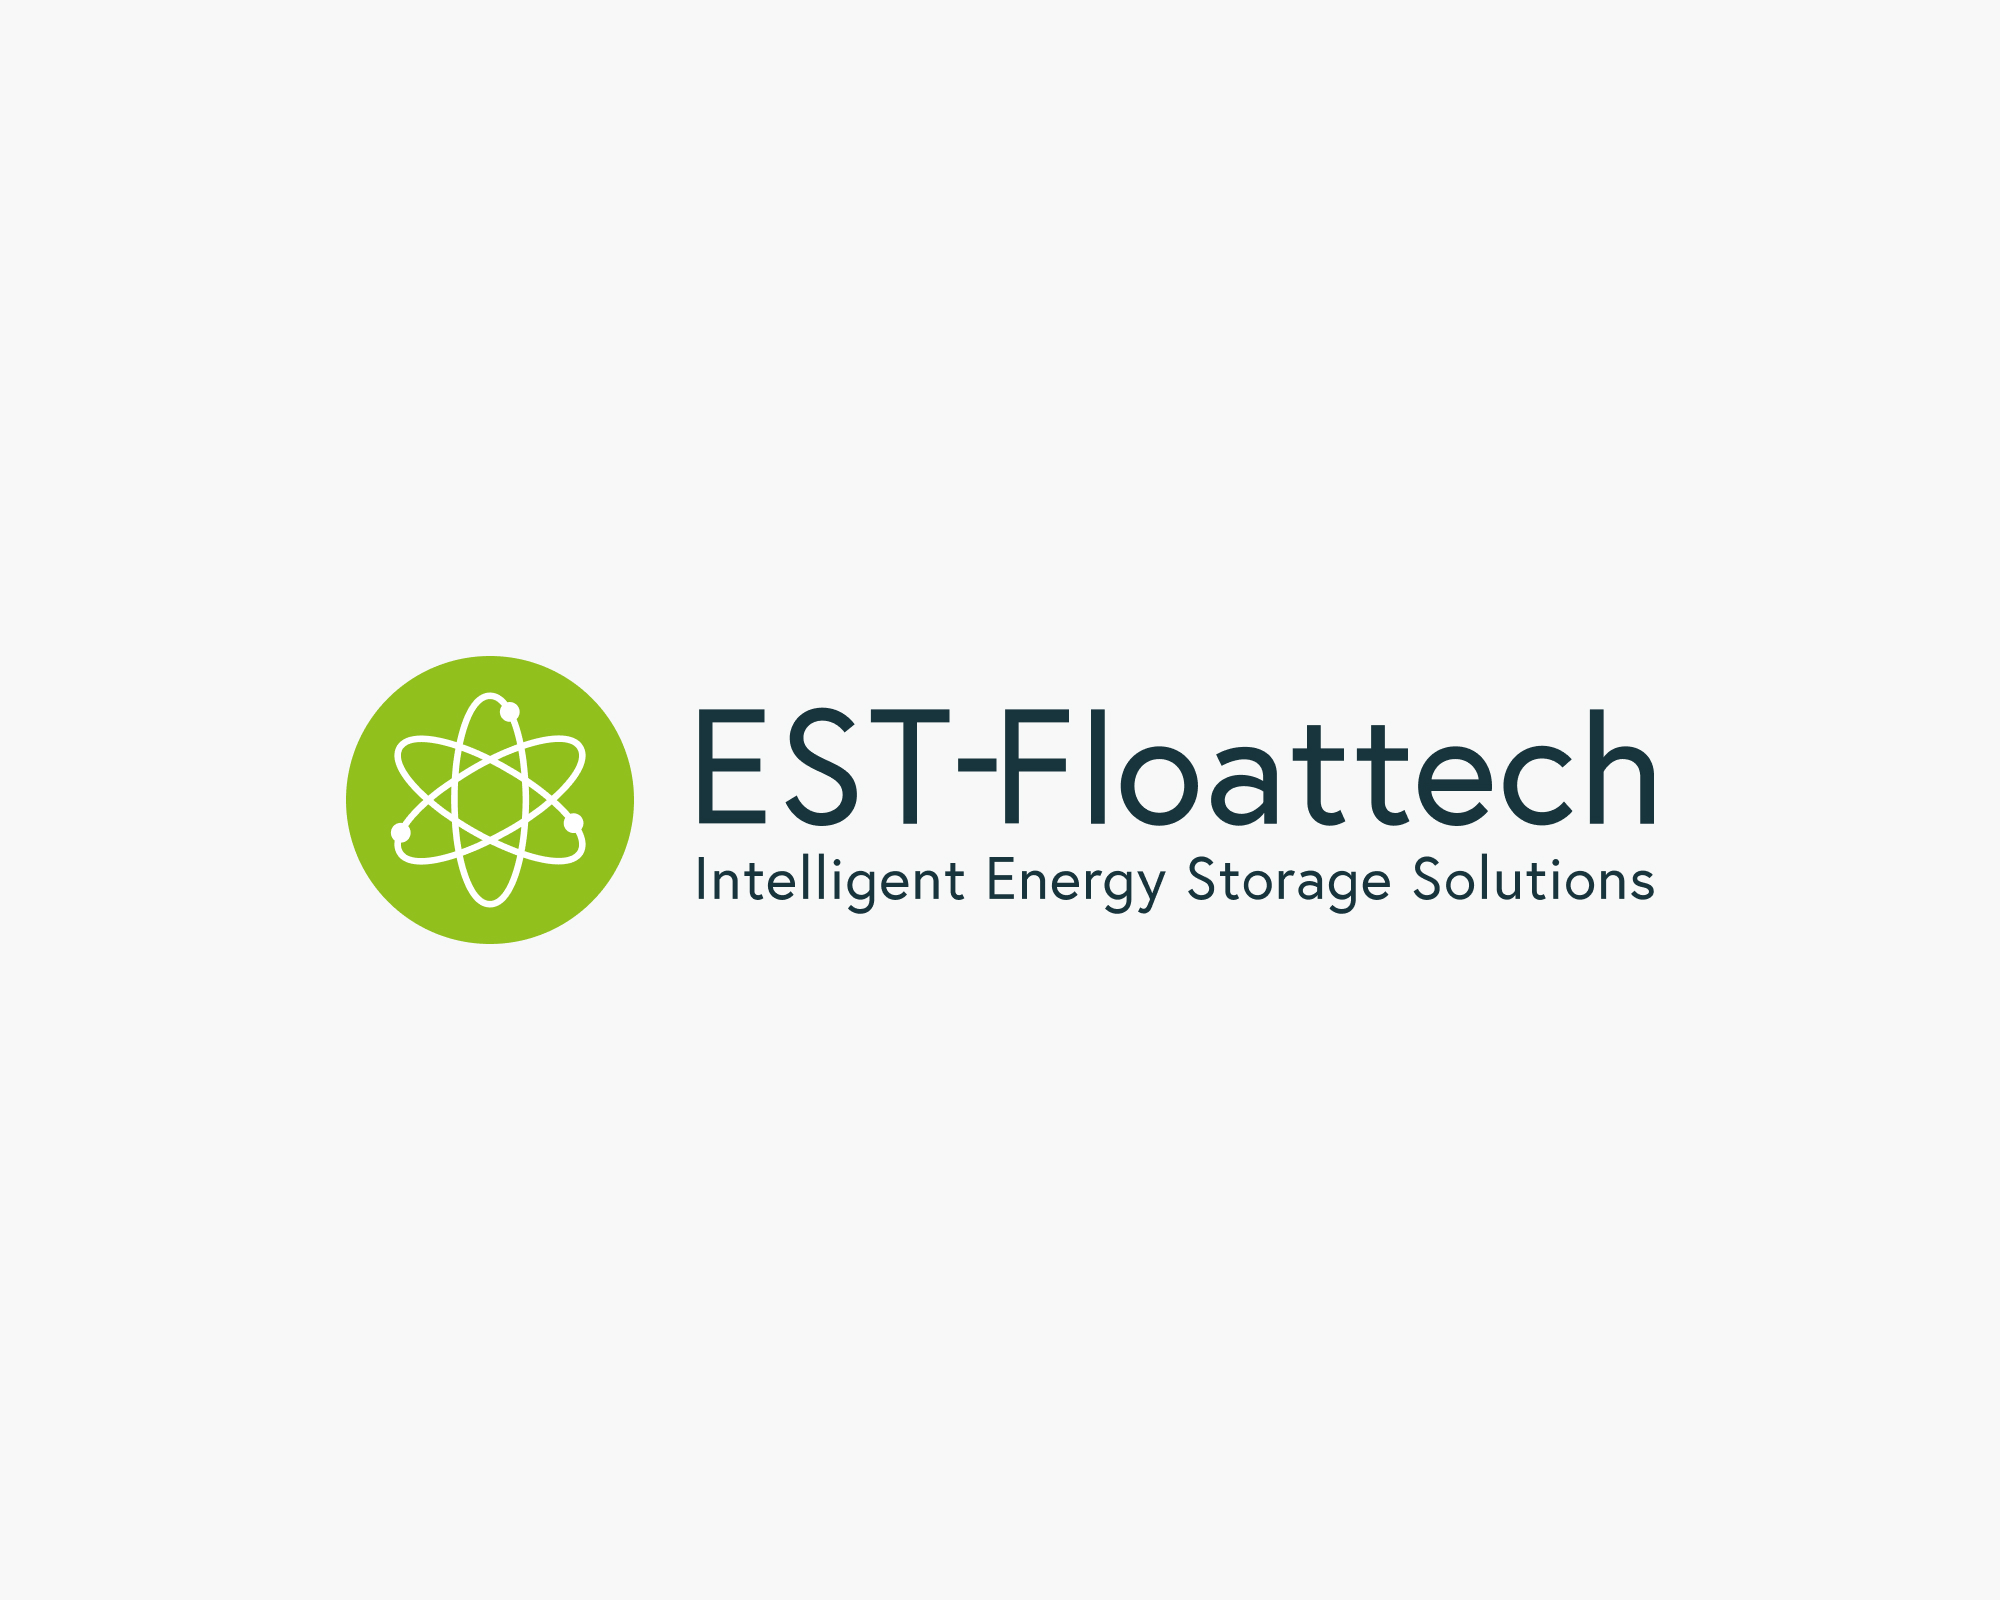 (c) Est-floattech.com